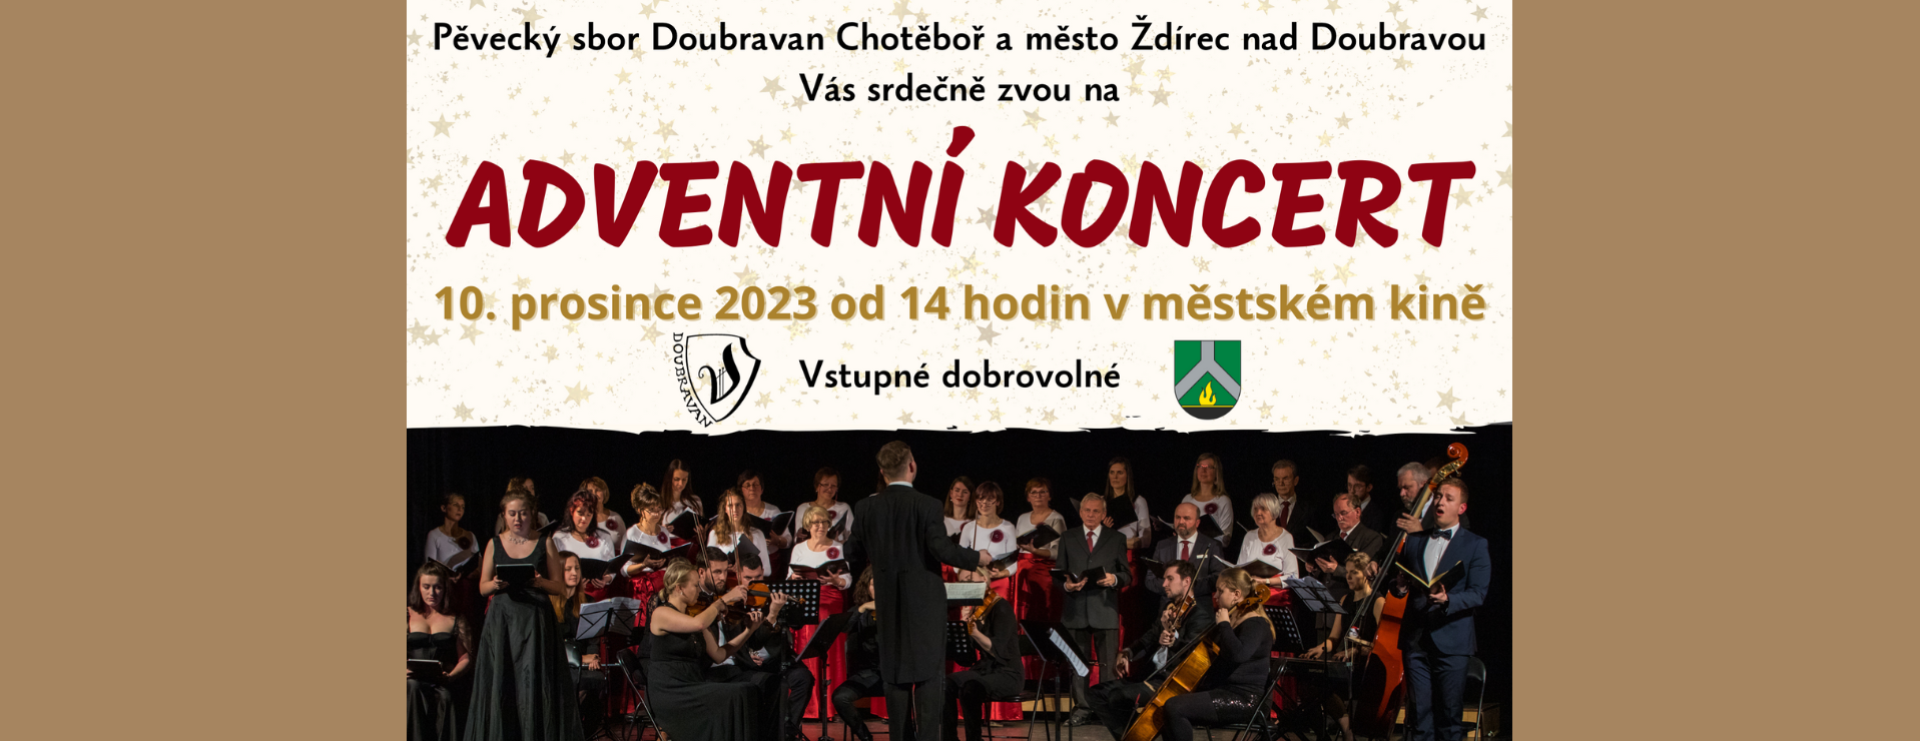 Adventní koncert Doubravanu